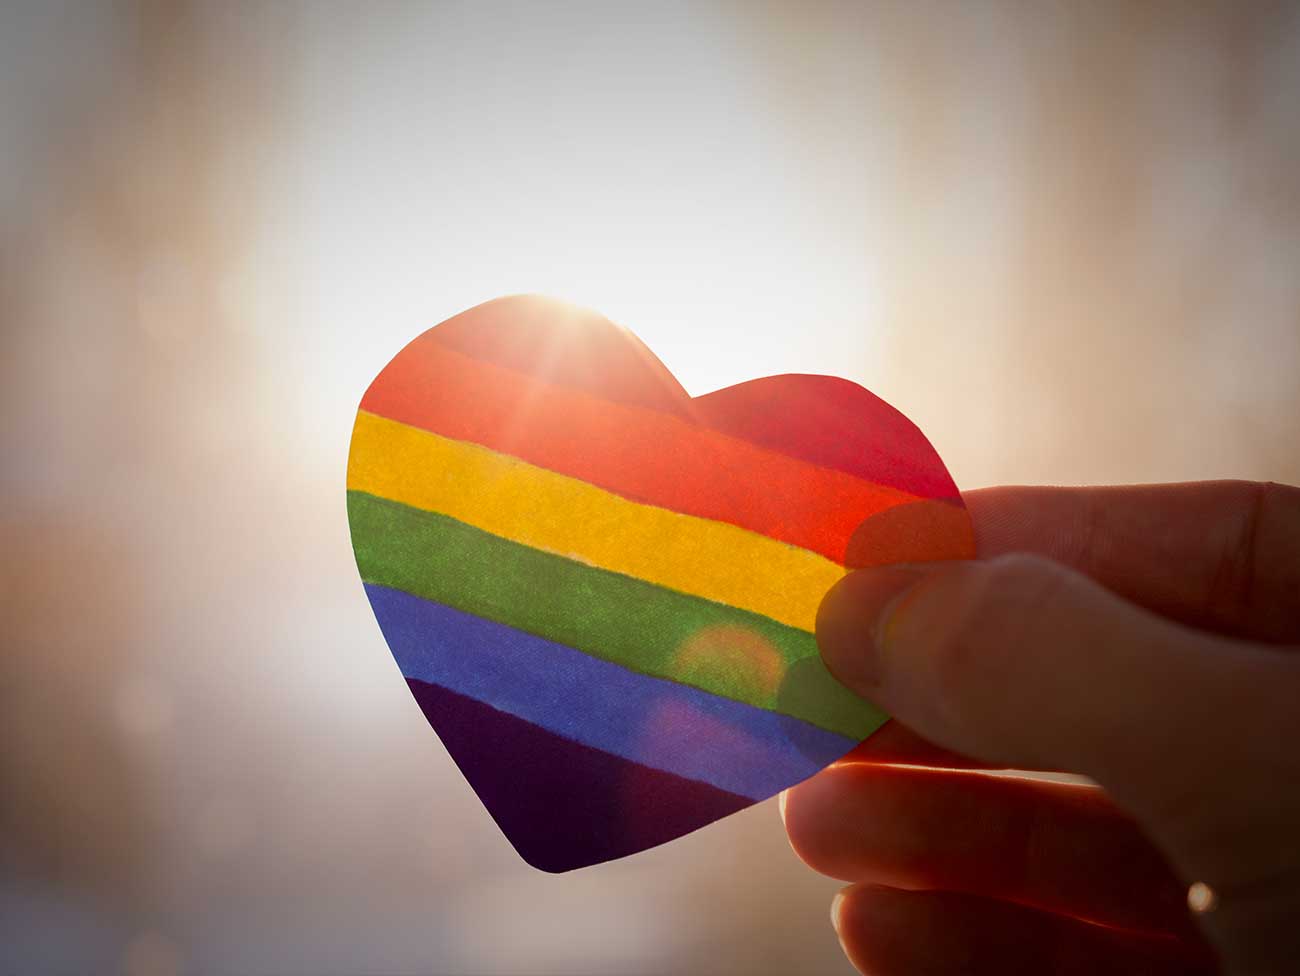 Hand holding a rainbow heart